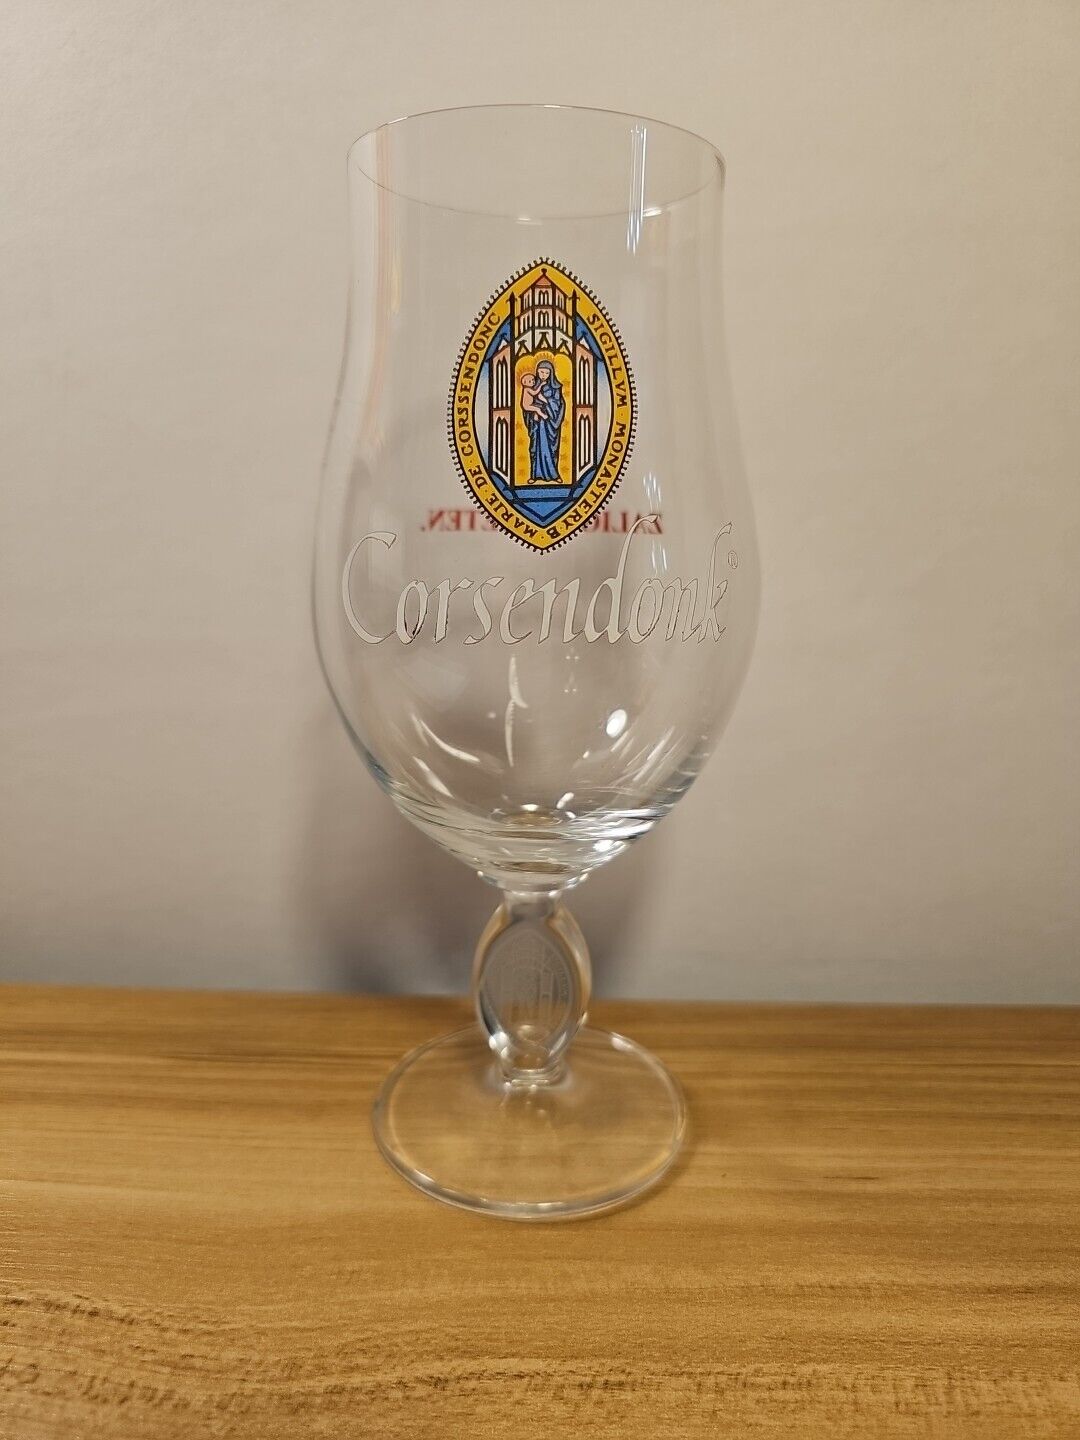 Corsendonk Zalig Genieten Tulip Belgian Beer monastery Glass Embossed Stem .33L